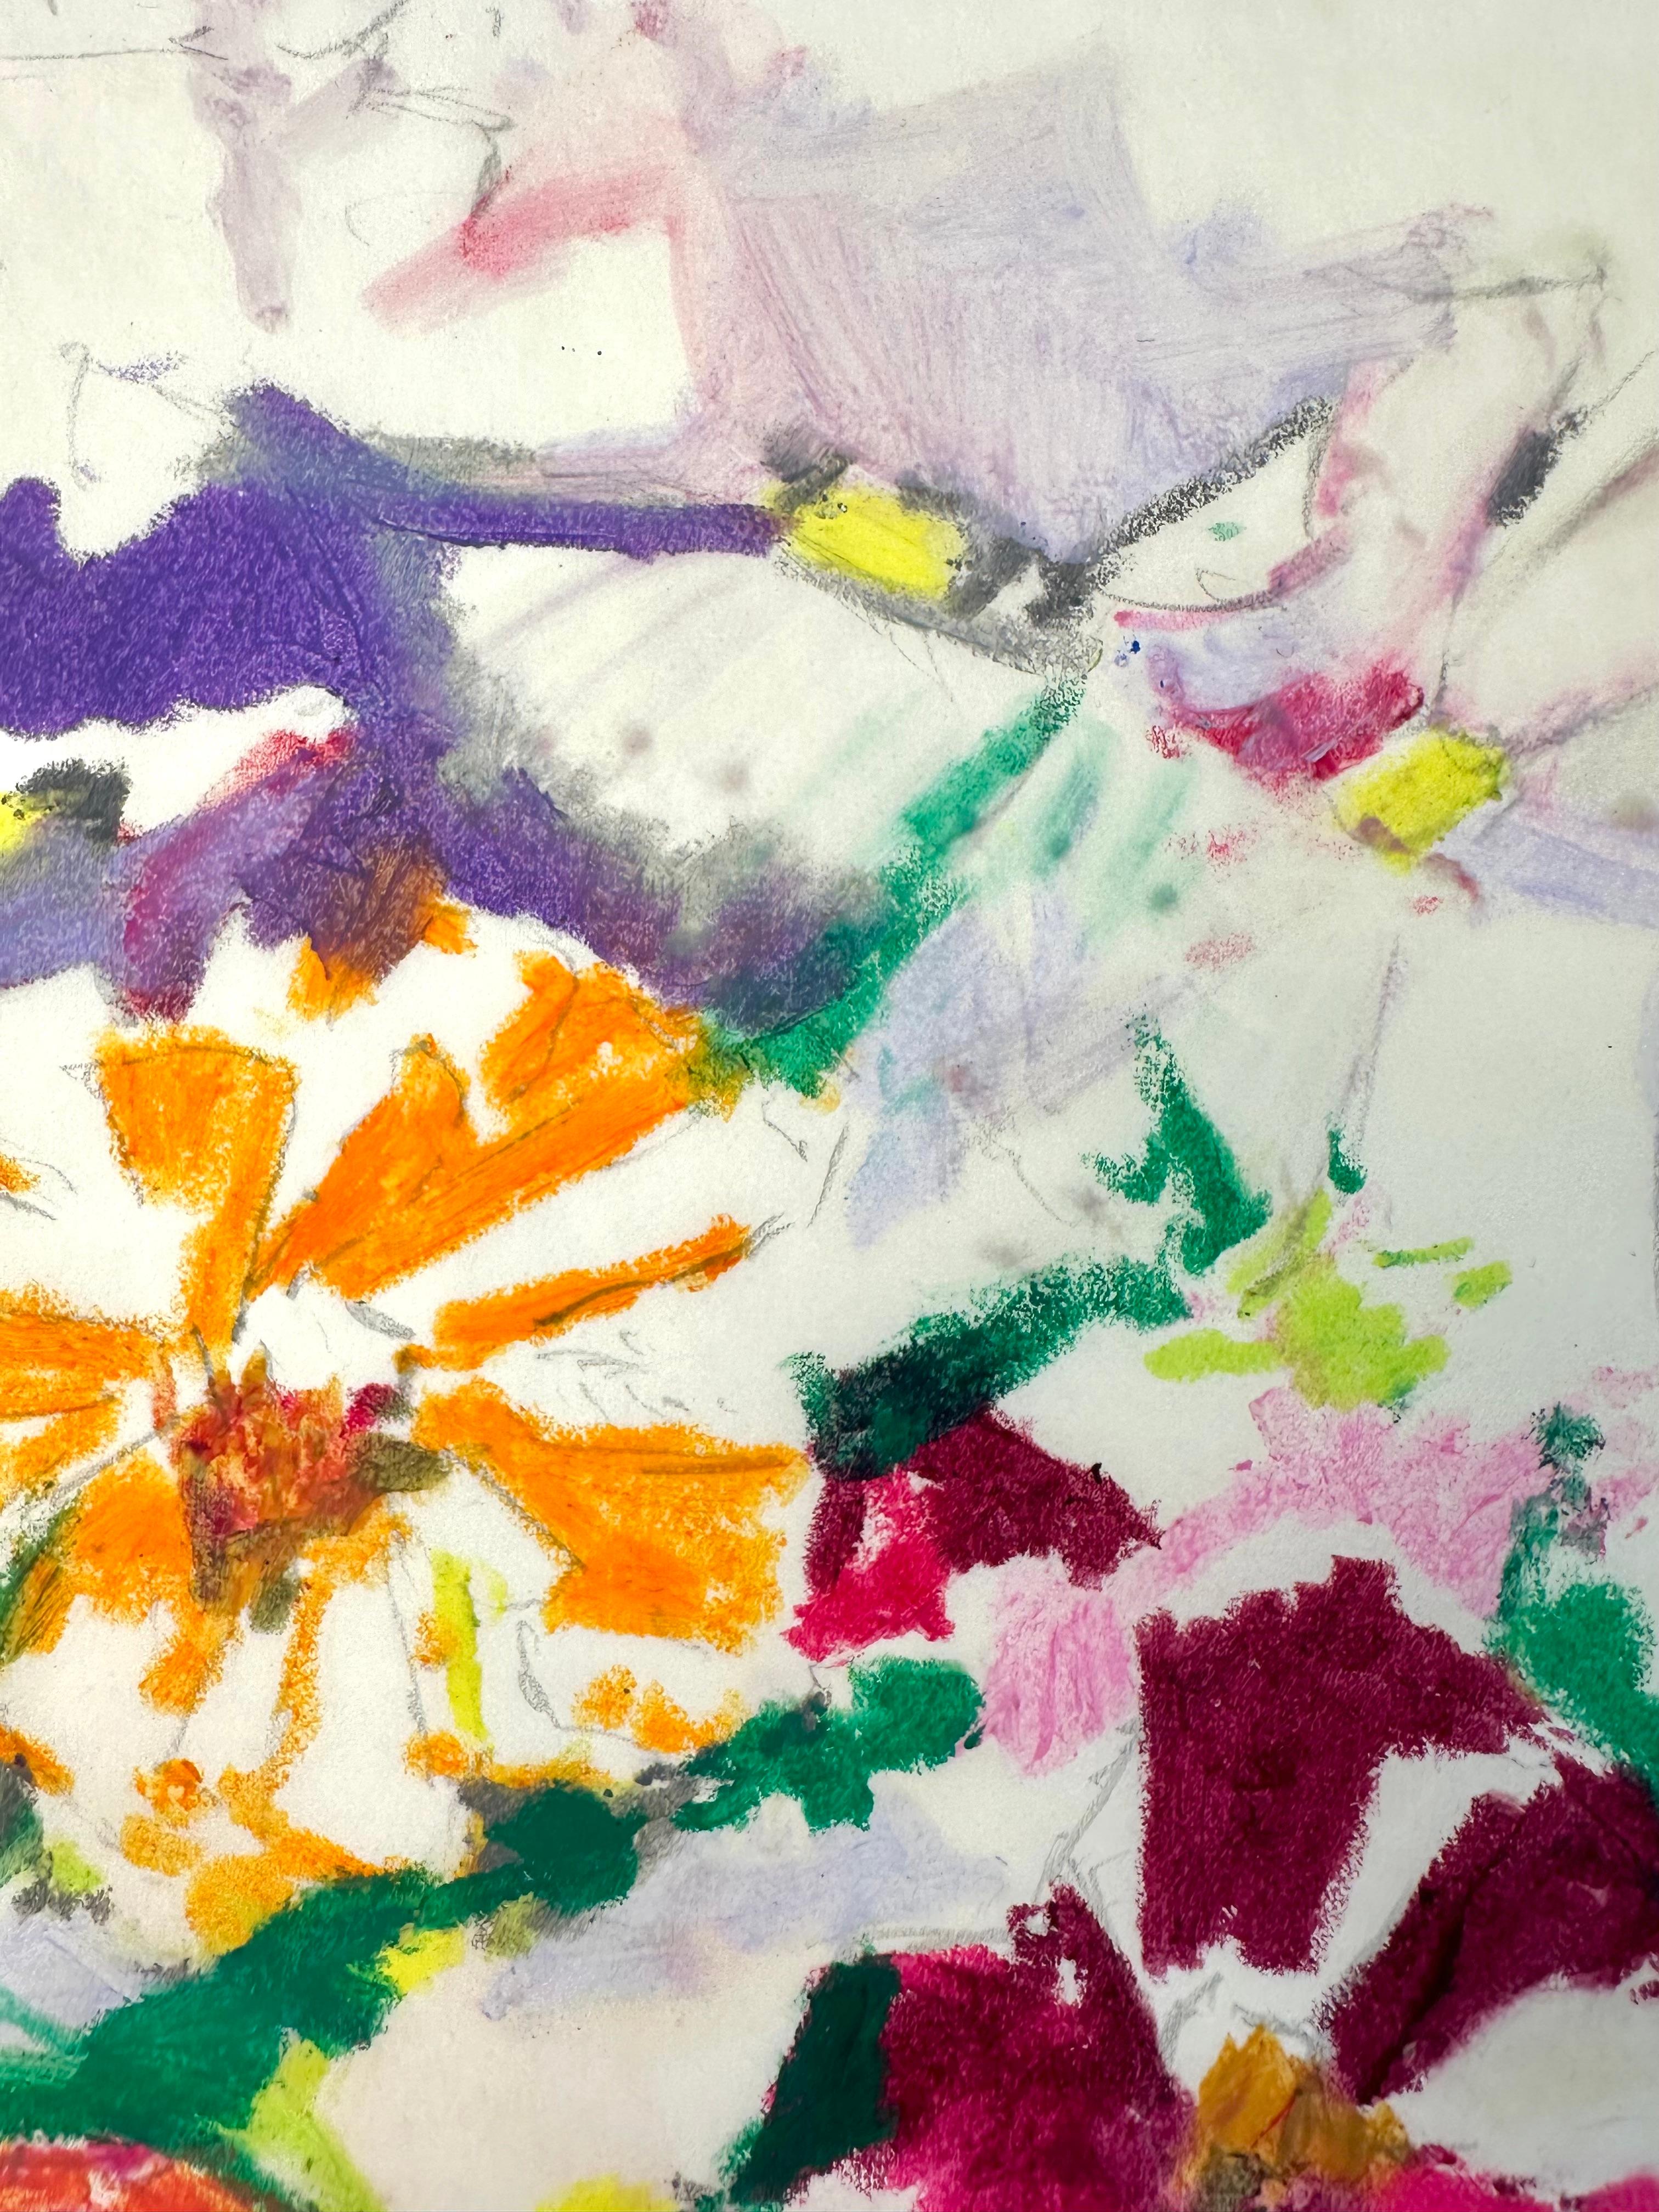 Belle nature morte florale de l'artiste américaine Jane Piper (1916-1991) . Pastel, crayon à l'huile et crayon sur papier calque. Image mesurant 13 x 15.5 pouces dans un cadre original mesurant 20 x 23 pouces. Signé et daté en bas à droite. 

Jane